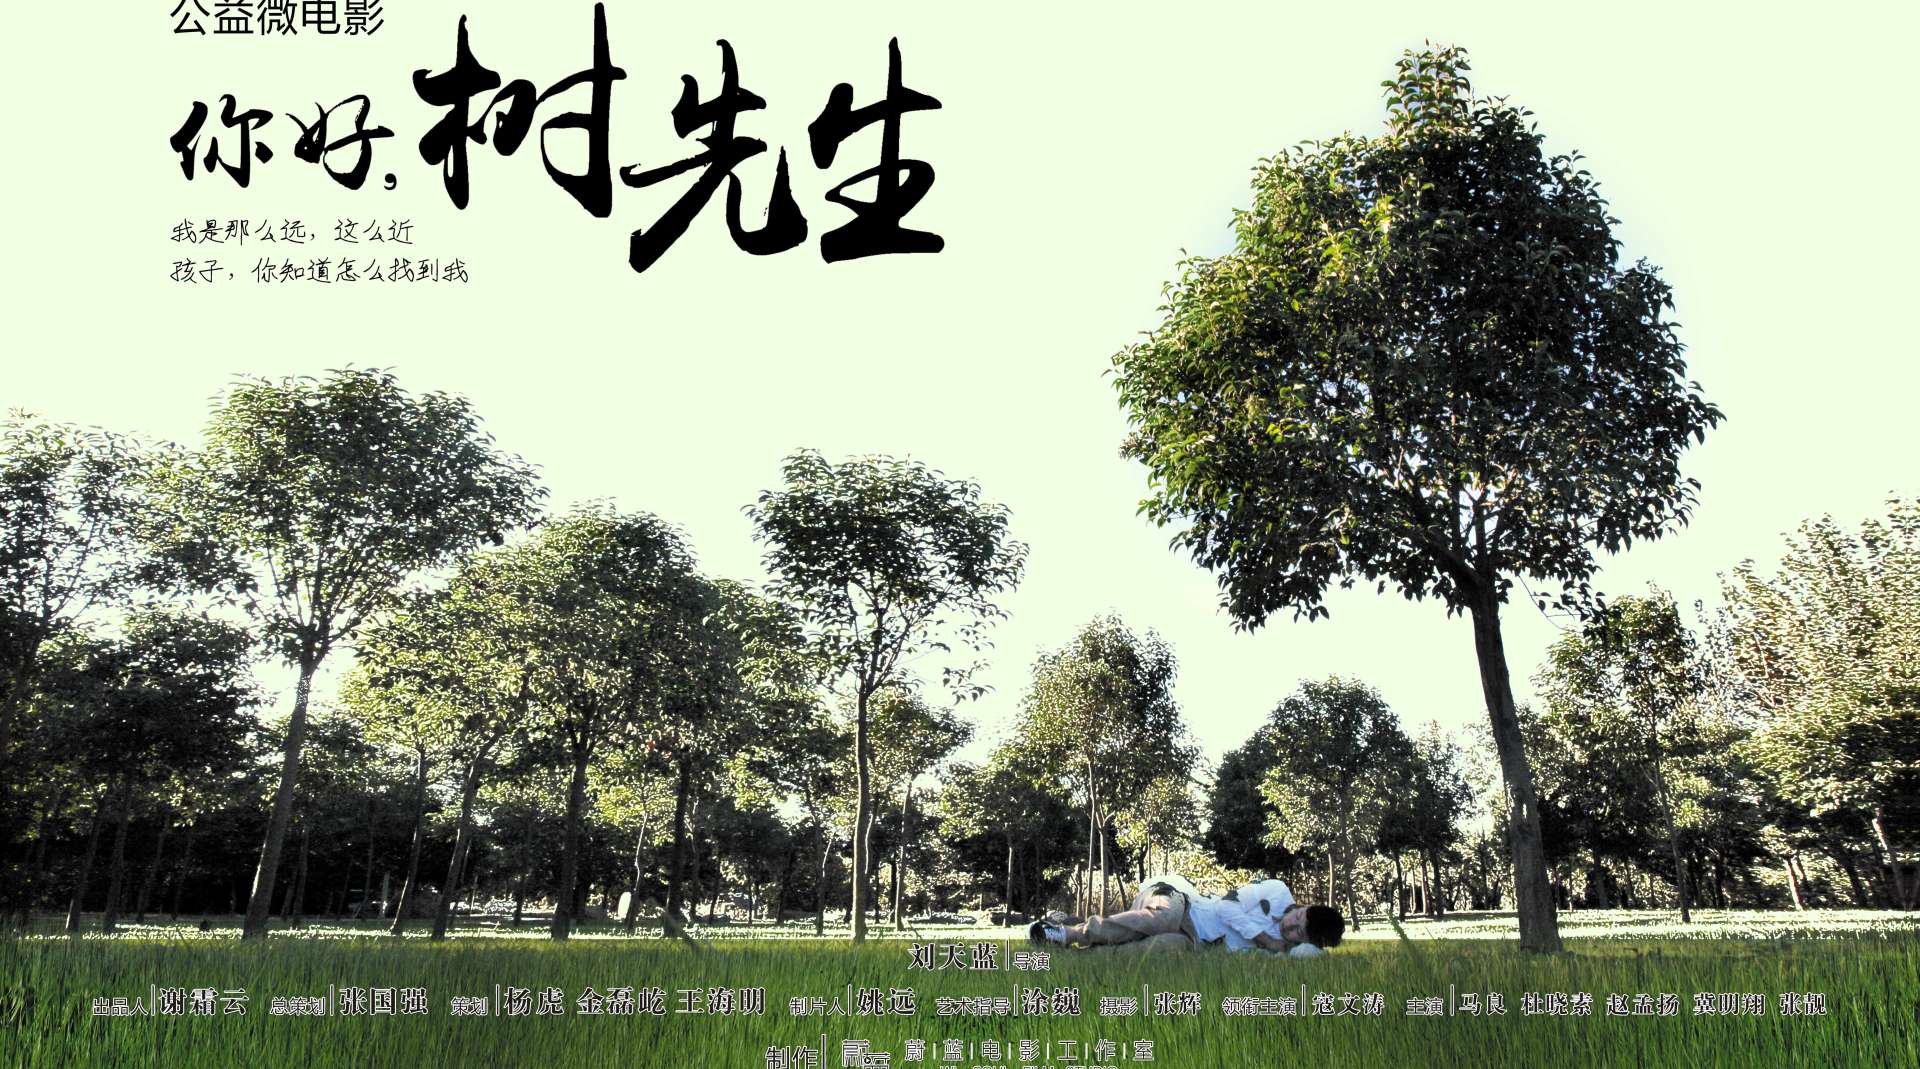 2015郑州微电影节最佳公益影片《你好，树先生》